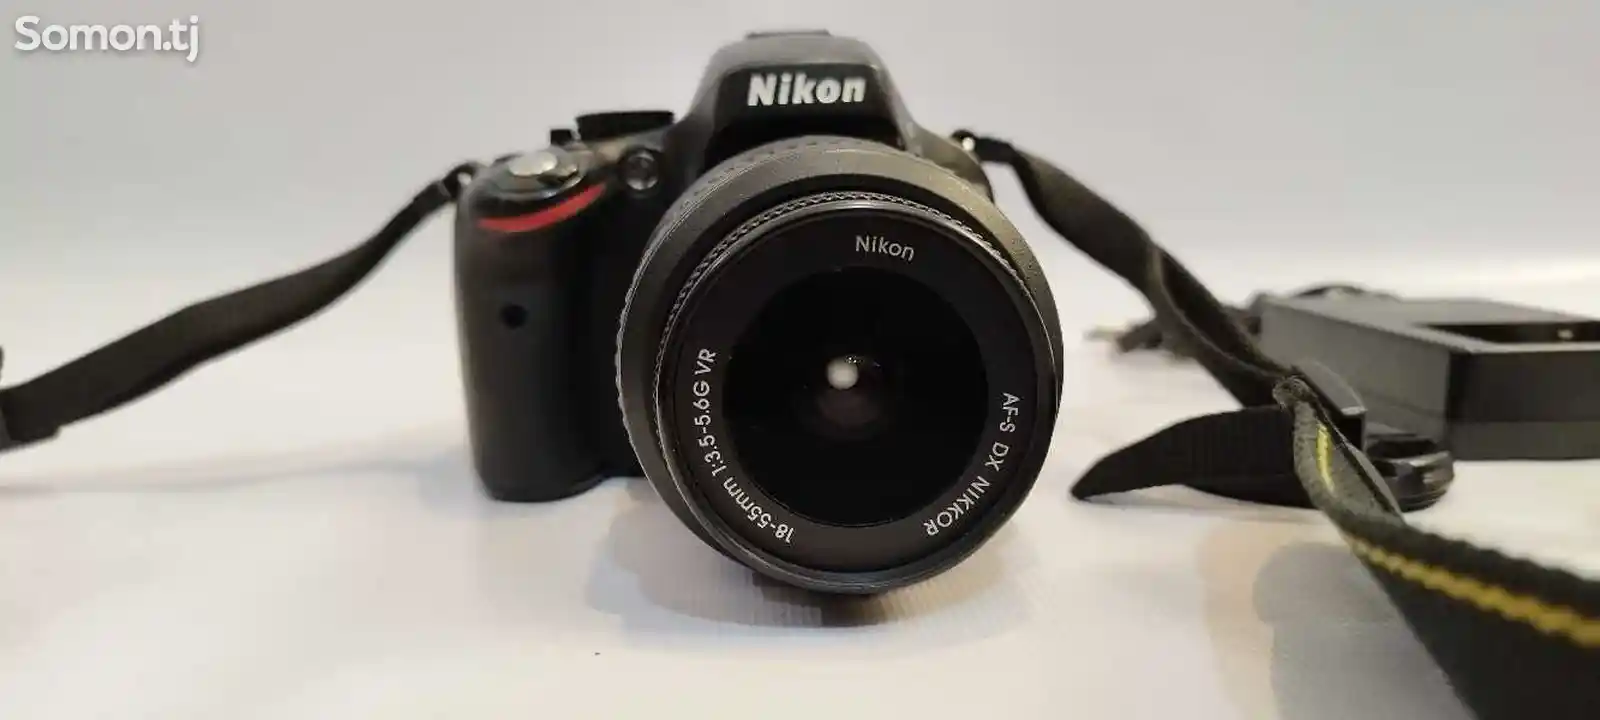 Nikon D5100-1